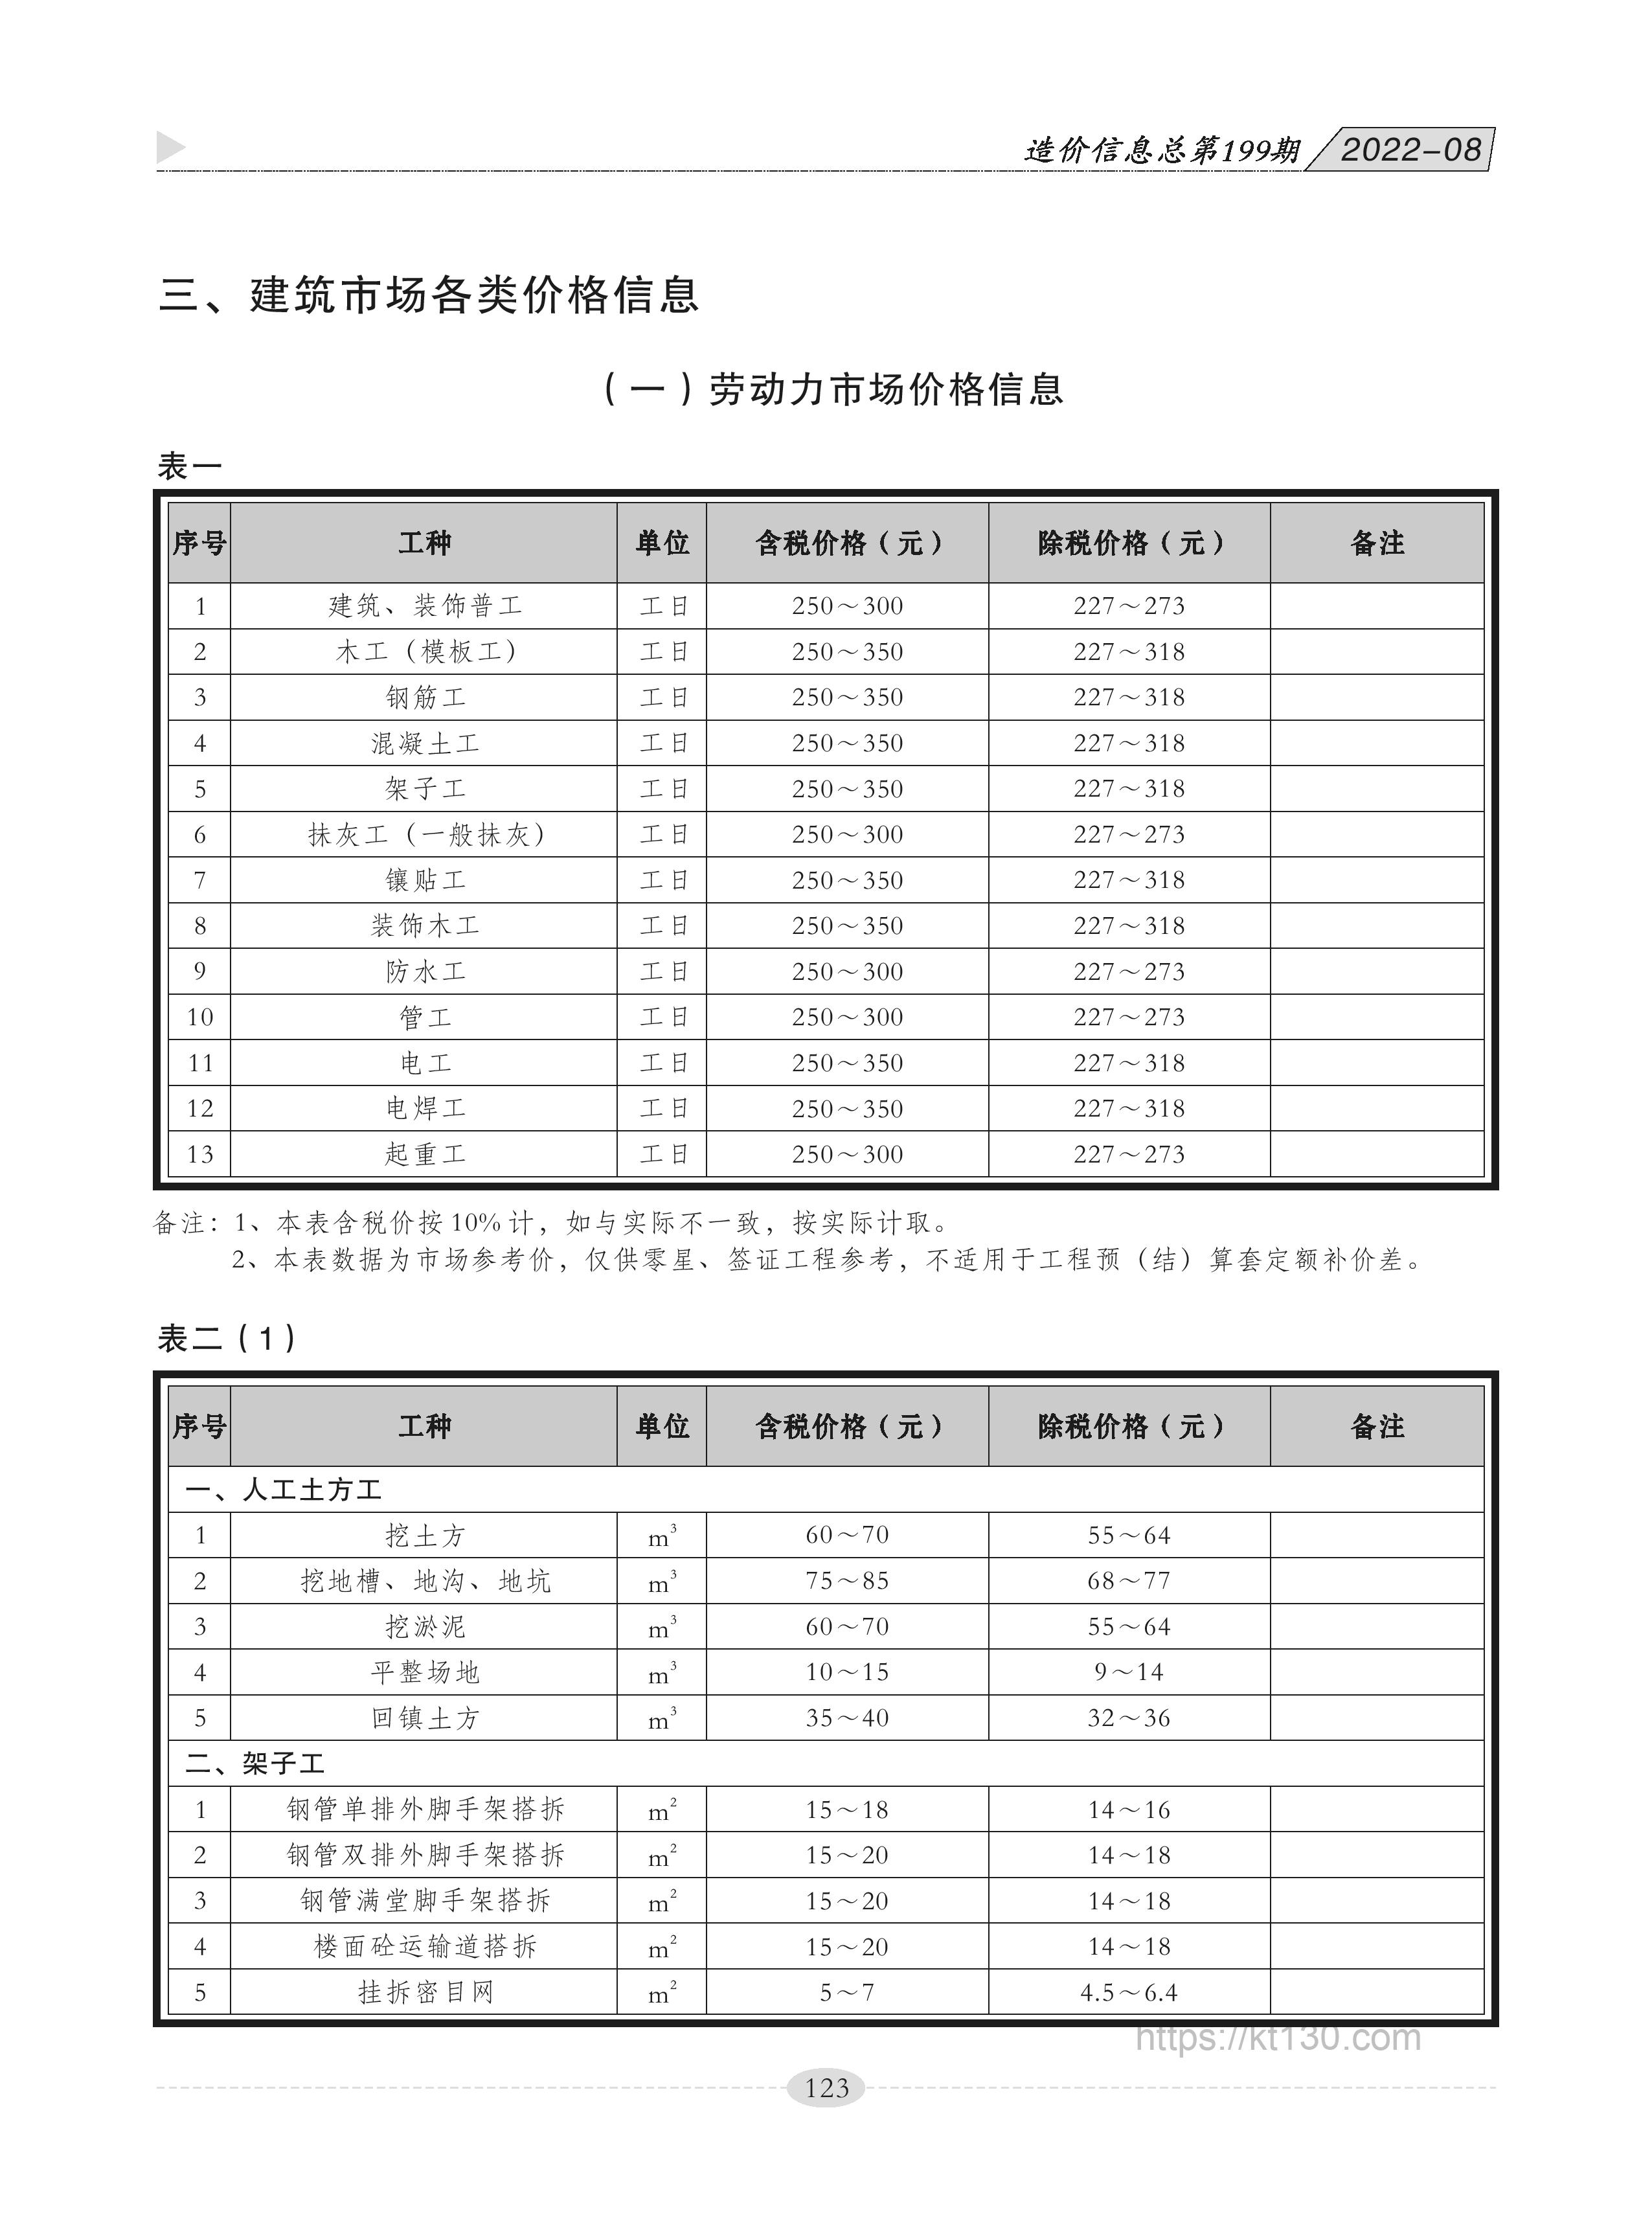 广西贵港市2022年8月份劳动力市场价格信息价